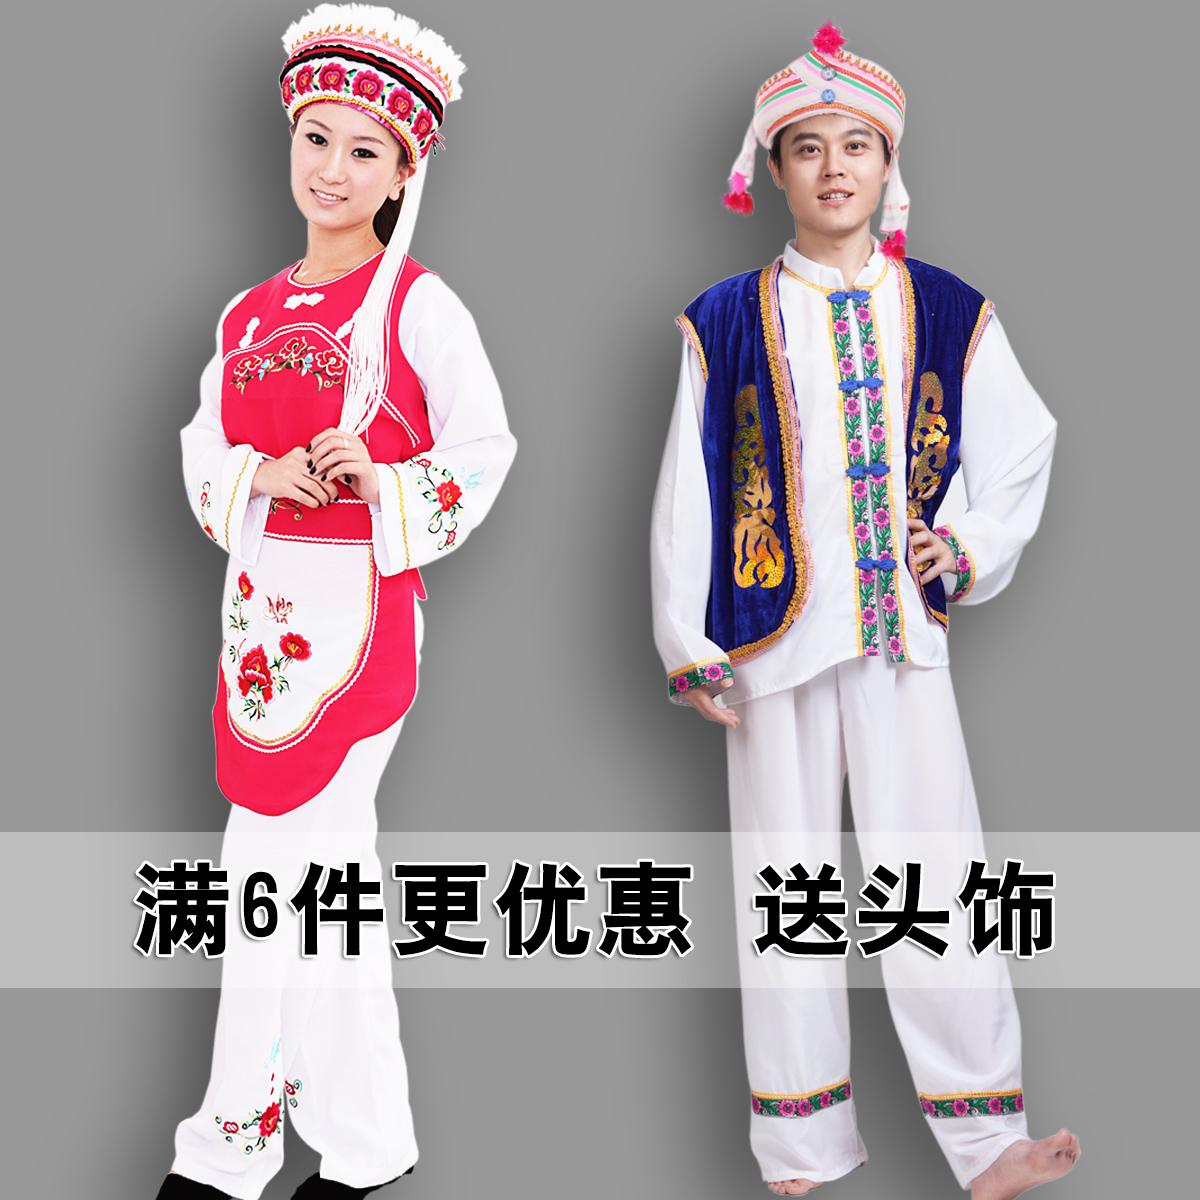 雲南少數民族大理白族服裝成人女五朵金花生活裝兒童演出舞蹈服男